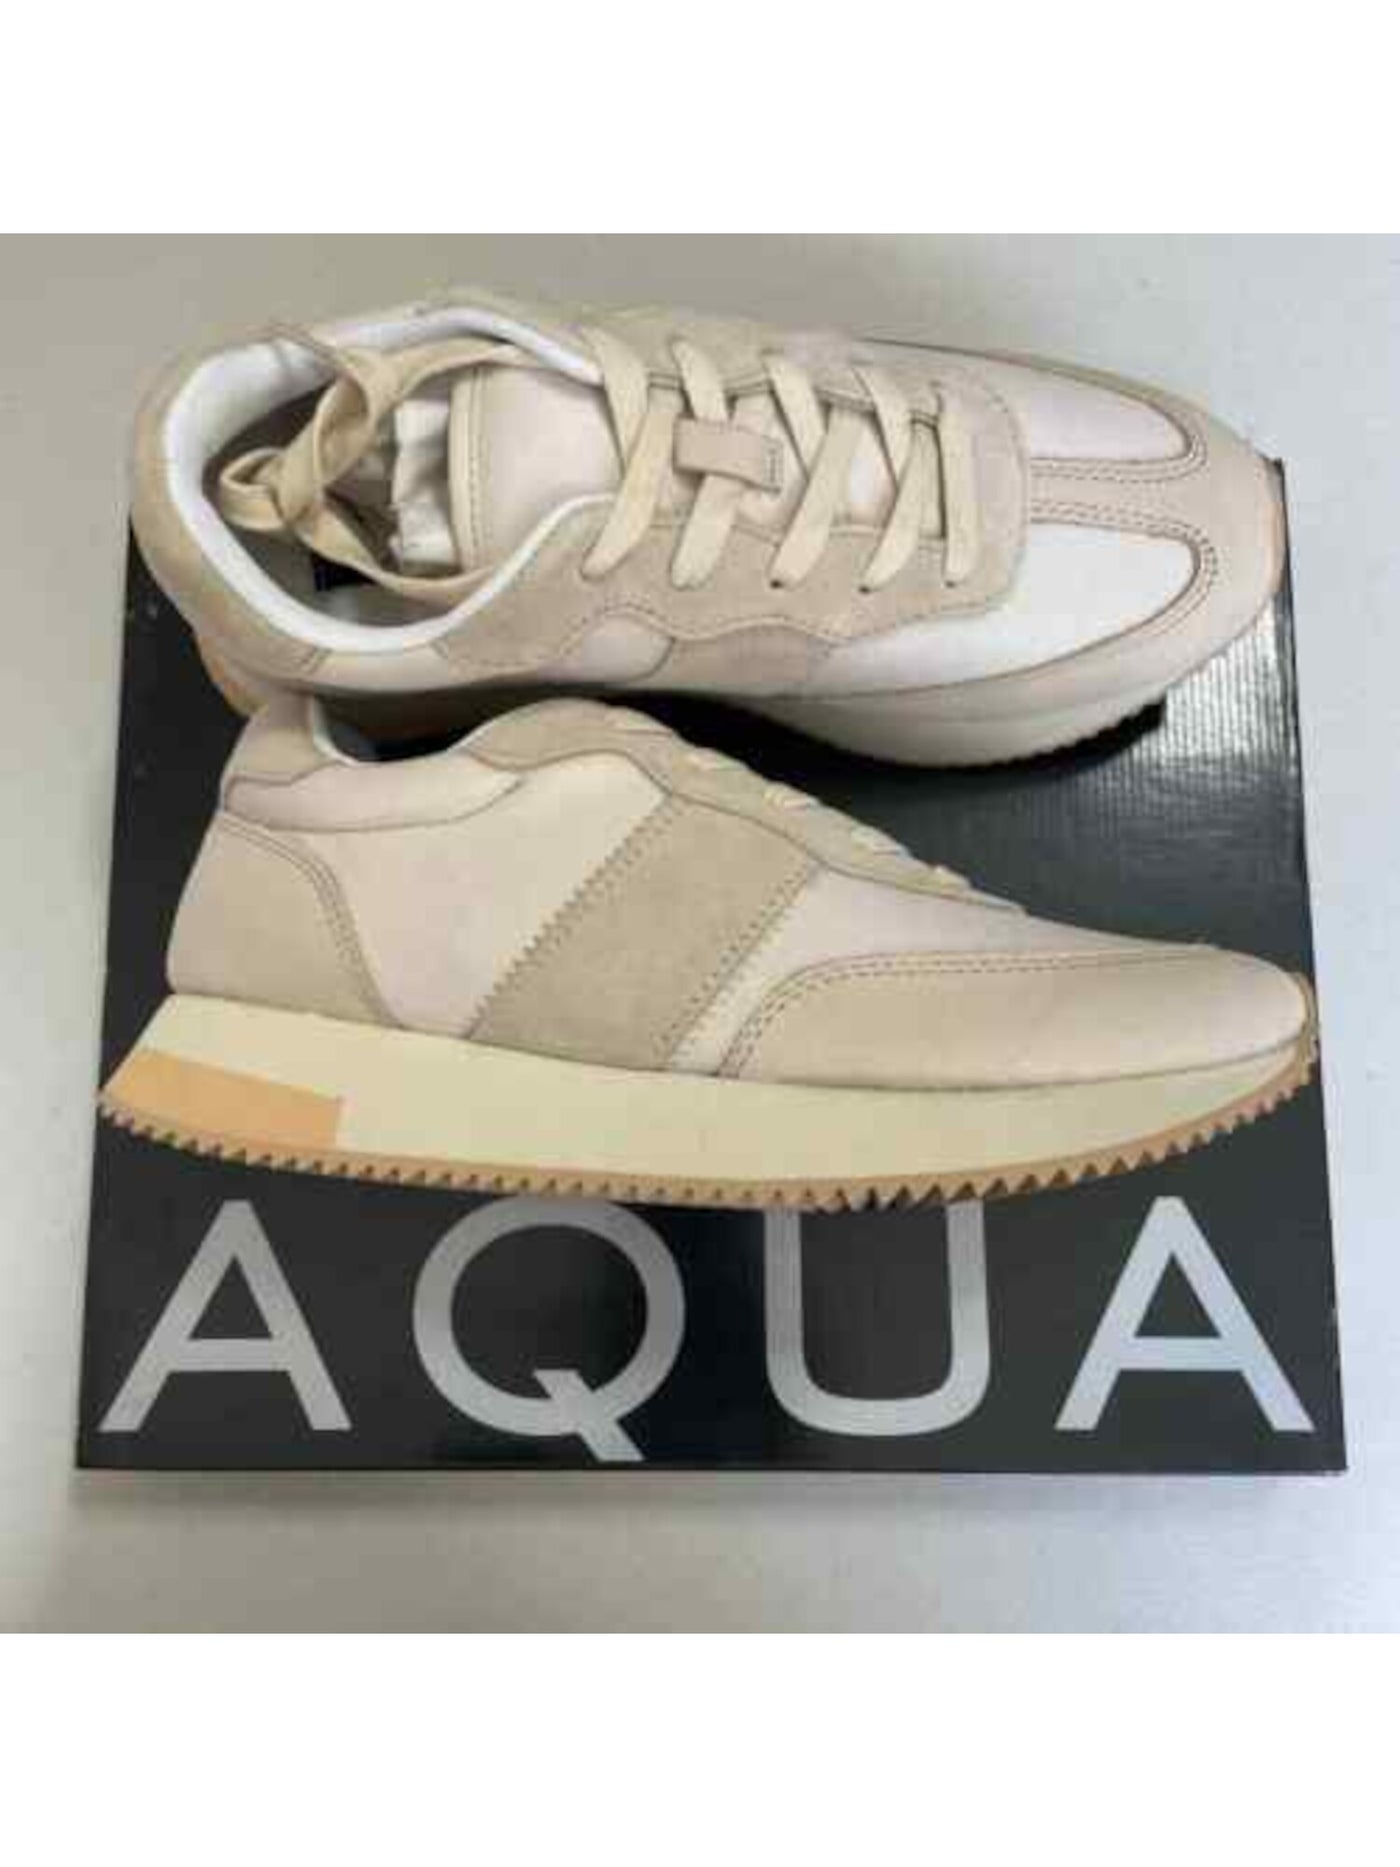 AQUA Womens Beige 0.5" Platform Padded Round Toe Wedge Lace-Up Leather Athletic Training Shoes 7 M